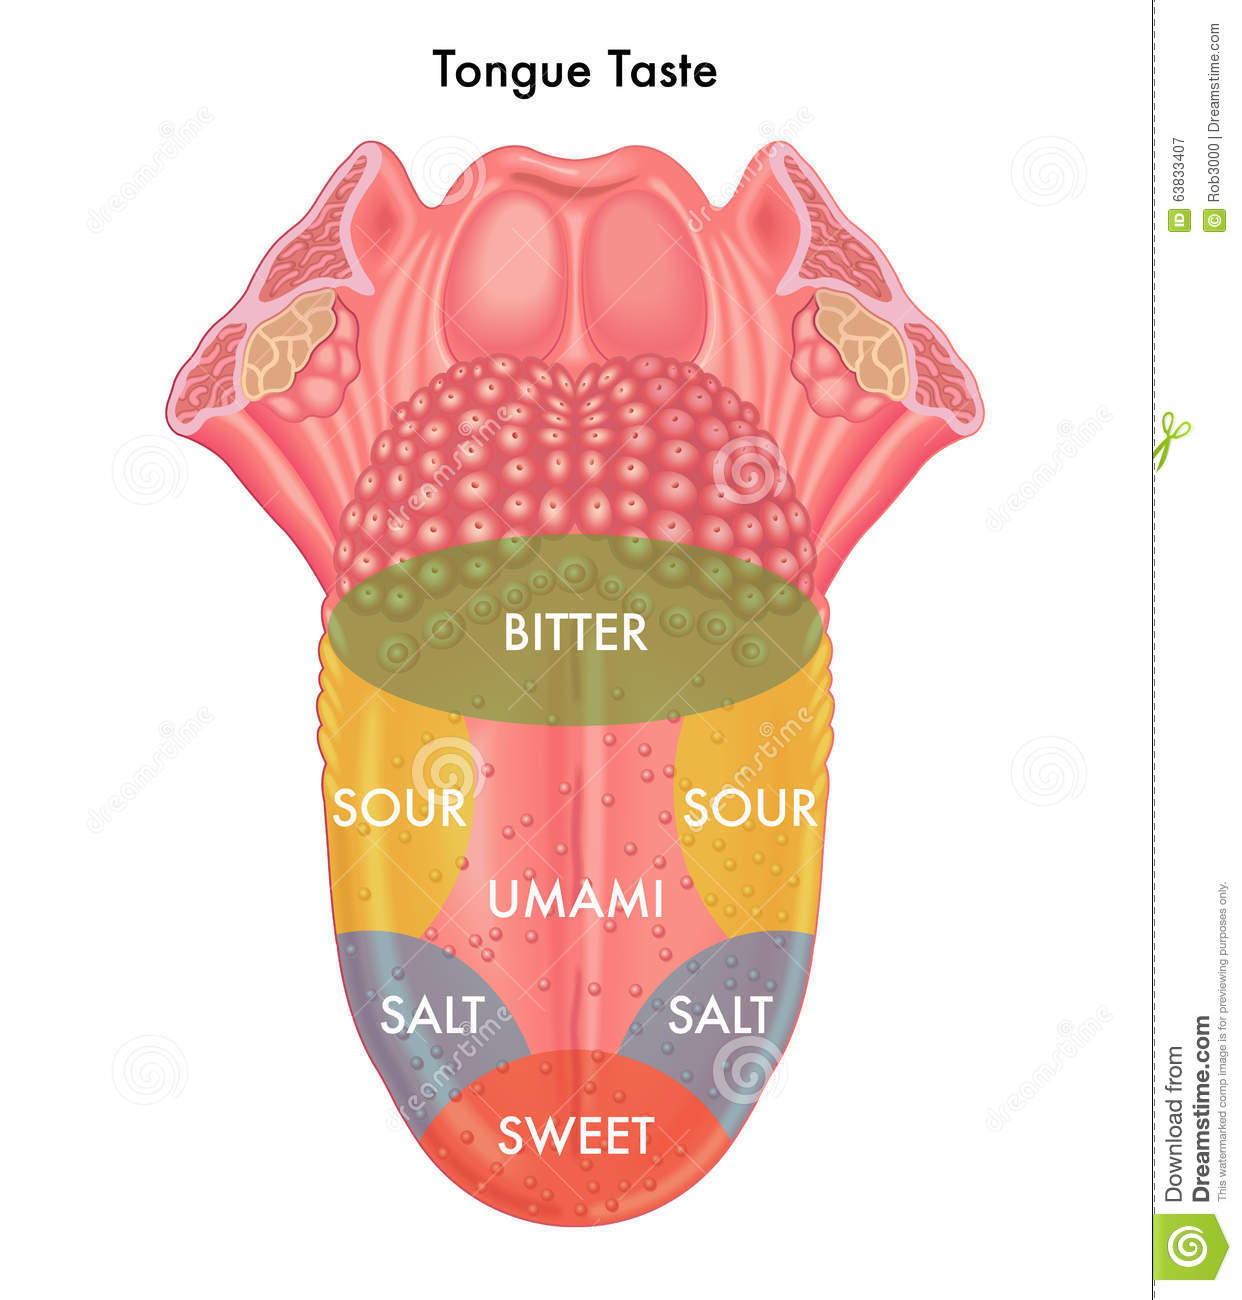 Tongue Taste Stock Photo   Image  63833407